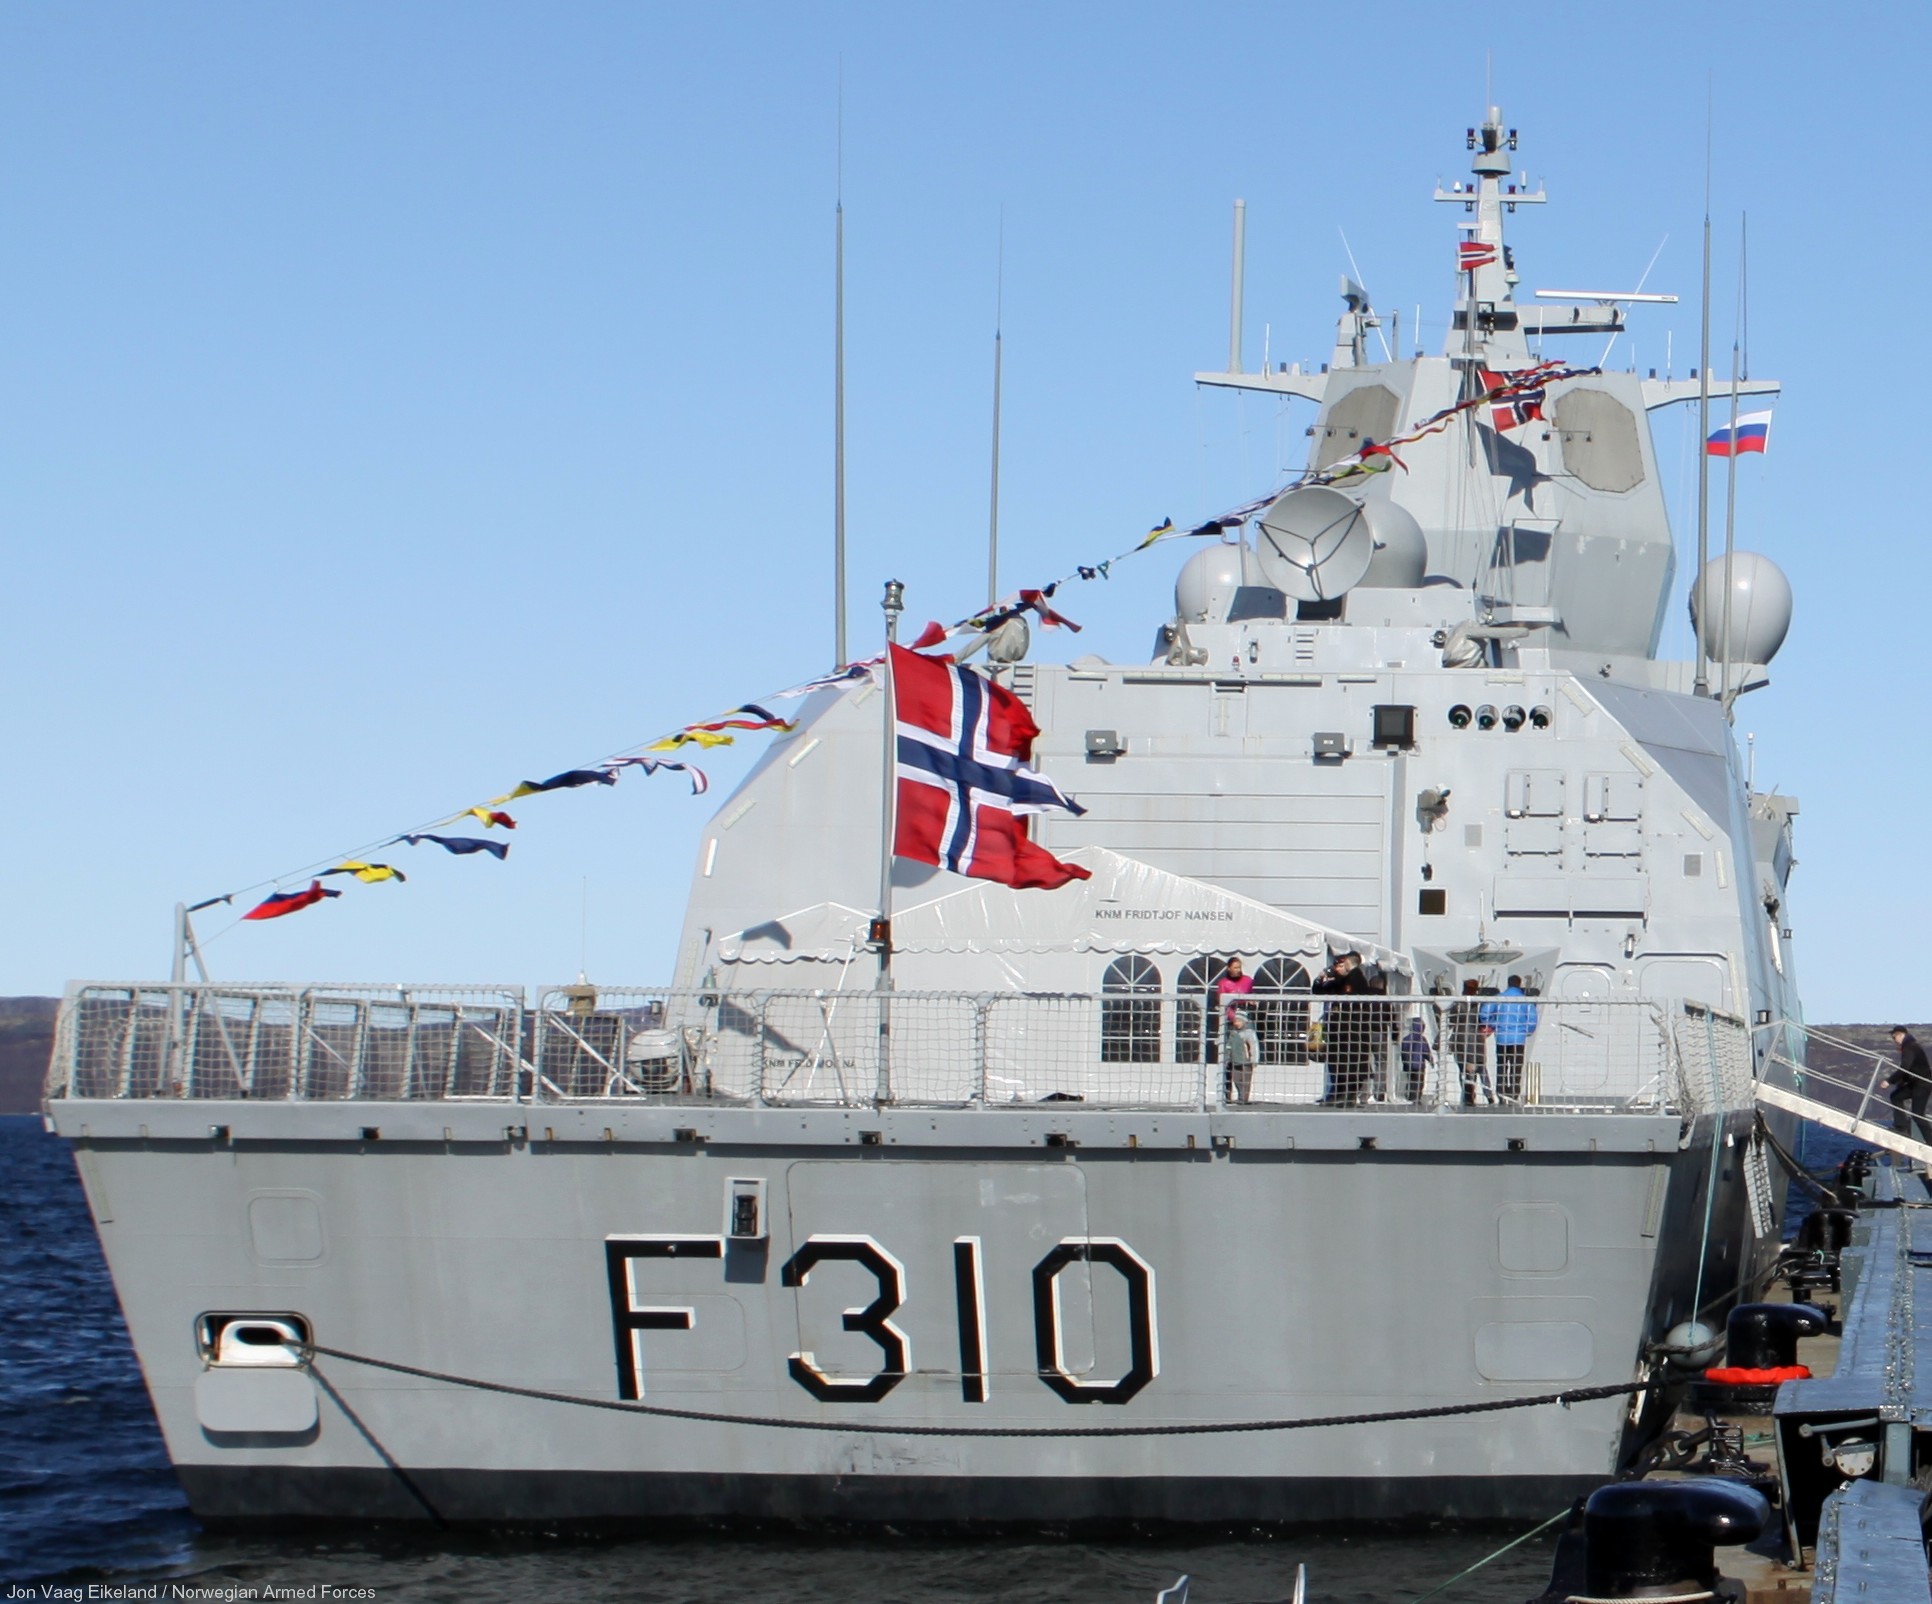 f-310 fridtjof nansen hnoms knm frigate royal norwegian navy sjoforsvaret 49